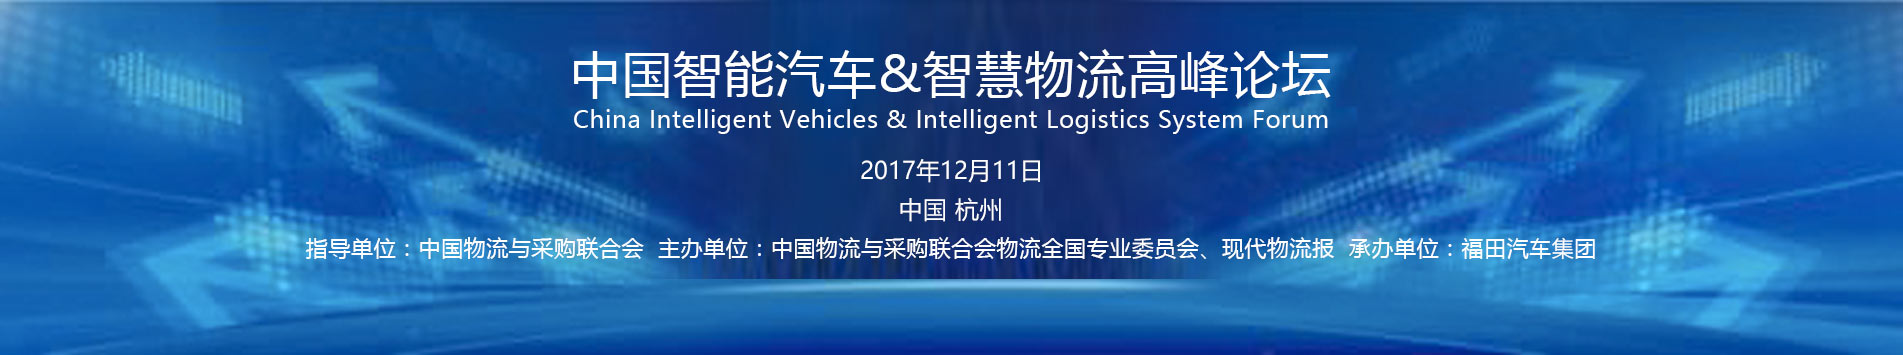 中国智能汽车与智慧物流高峰论坛